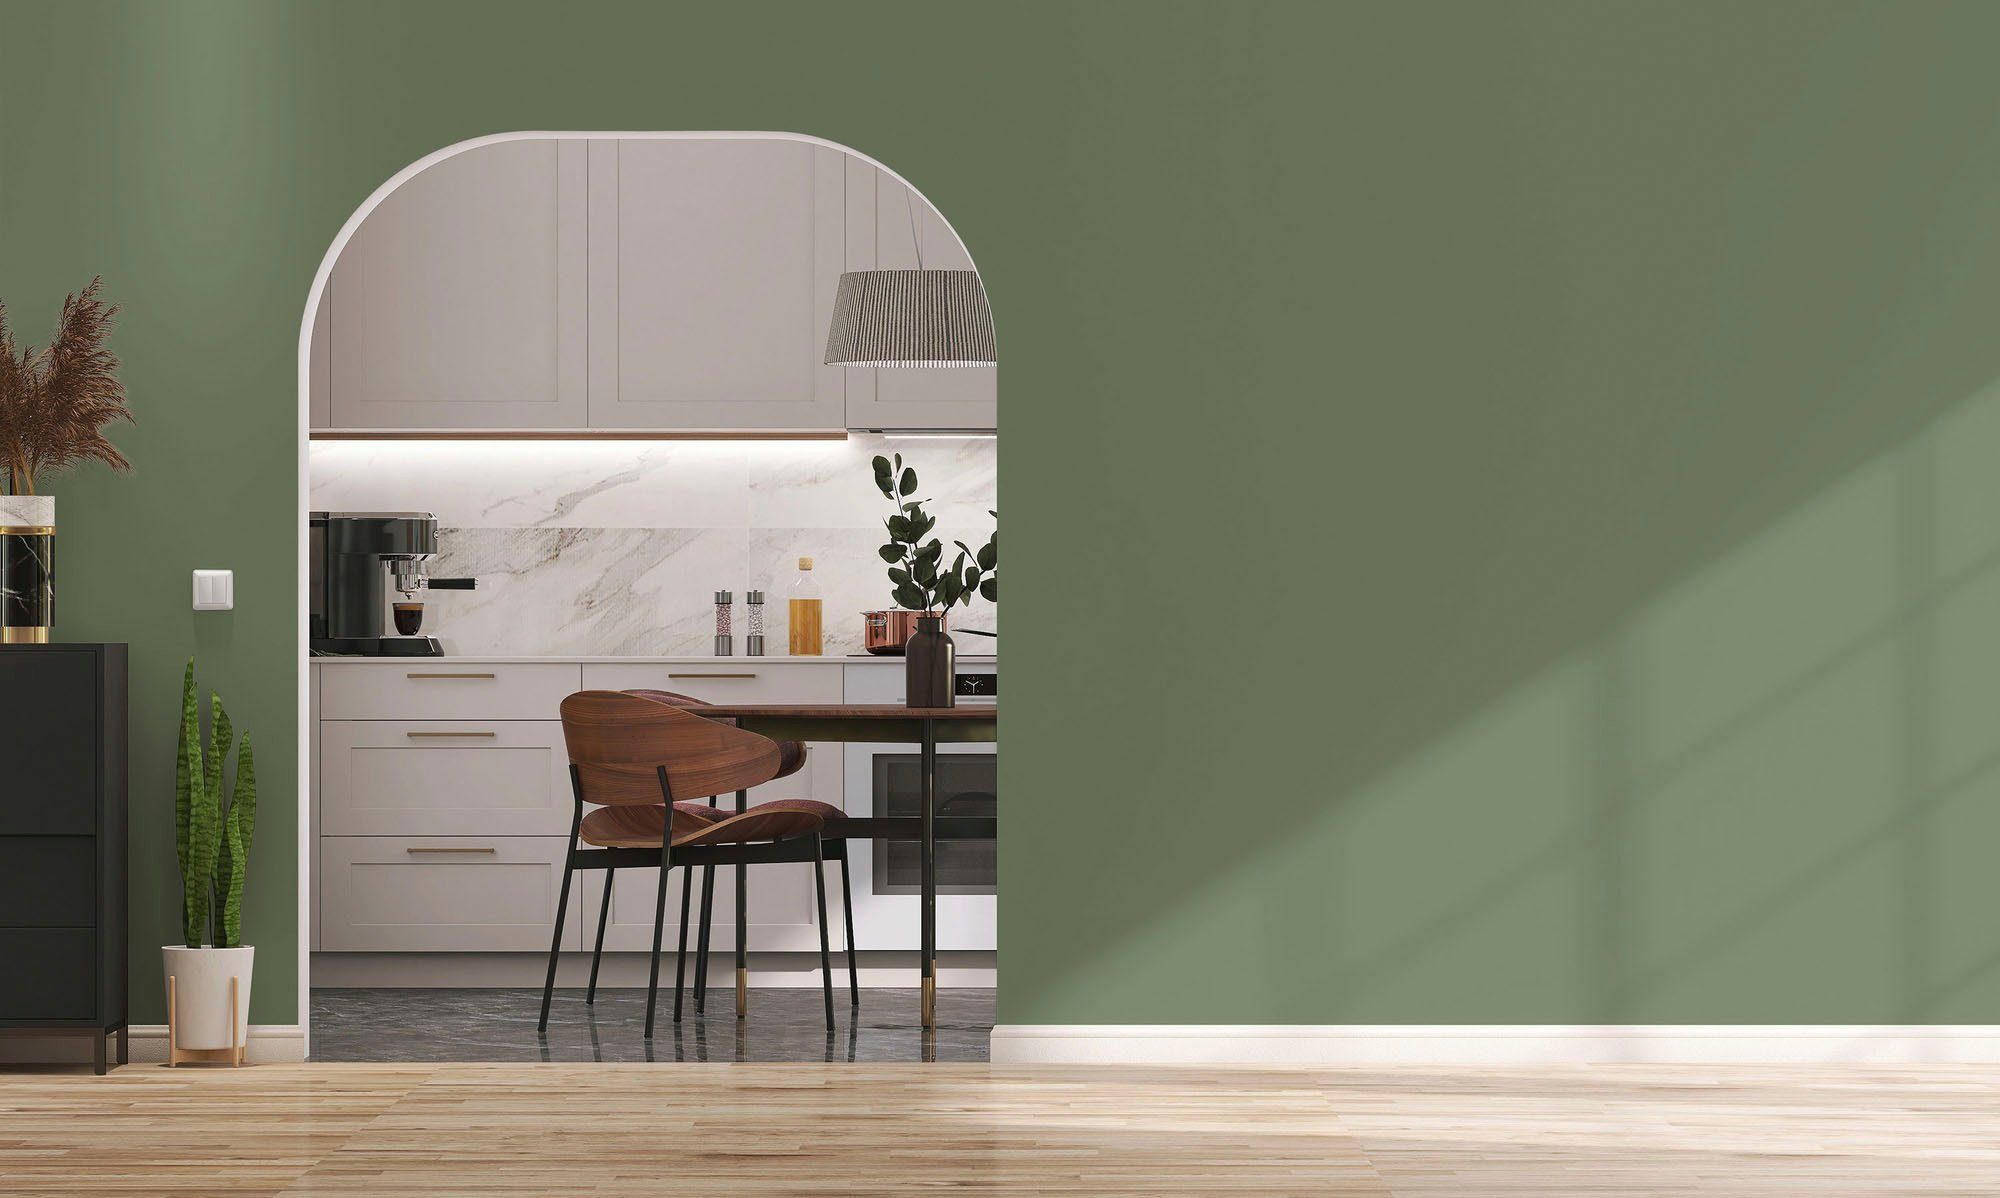 Wohnzimmer, Küche, Création für Wandfarbe c5003 Premium sage green, Innenwandfarbe und A.S. green PURO ideal Farbwelt sage Grün Tuchmatt Flur Schlafzimmer,